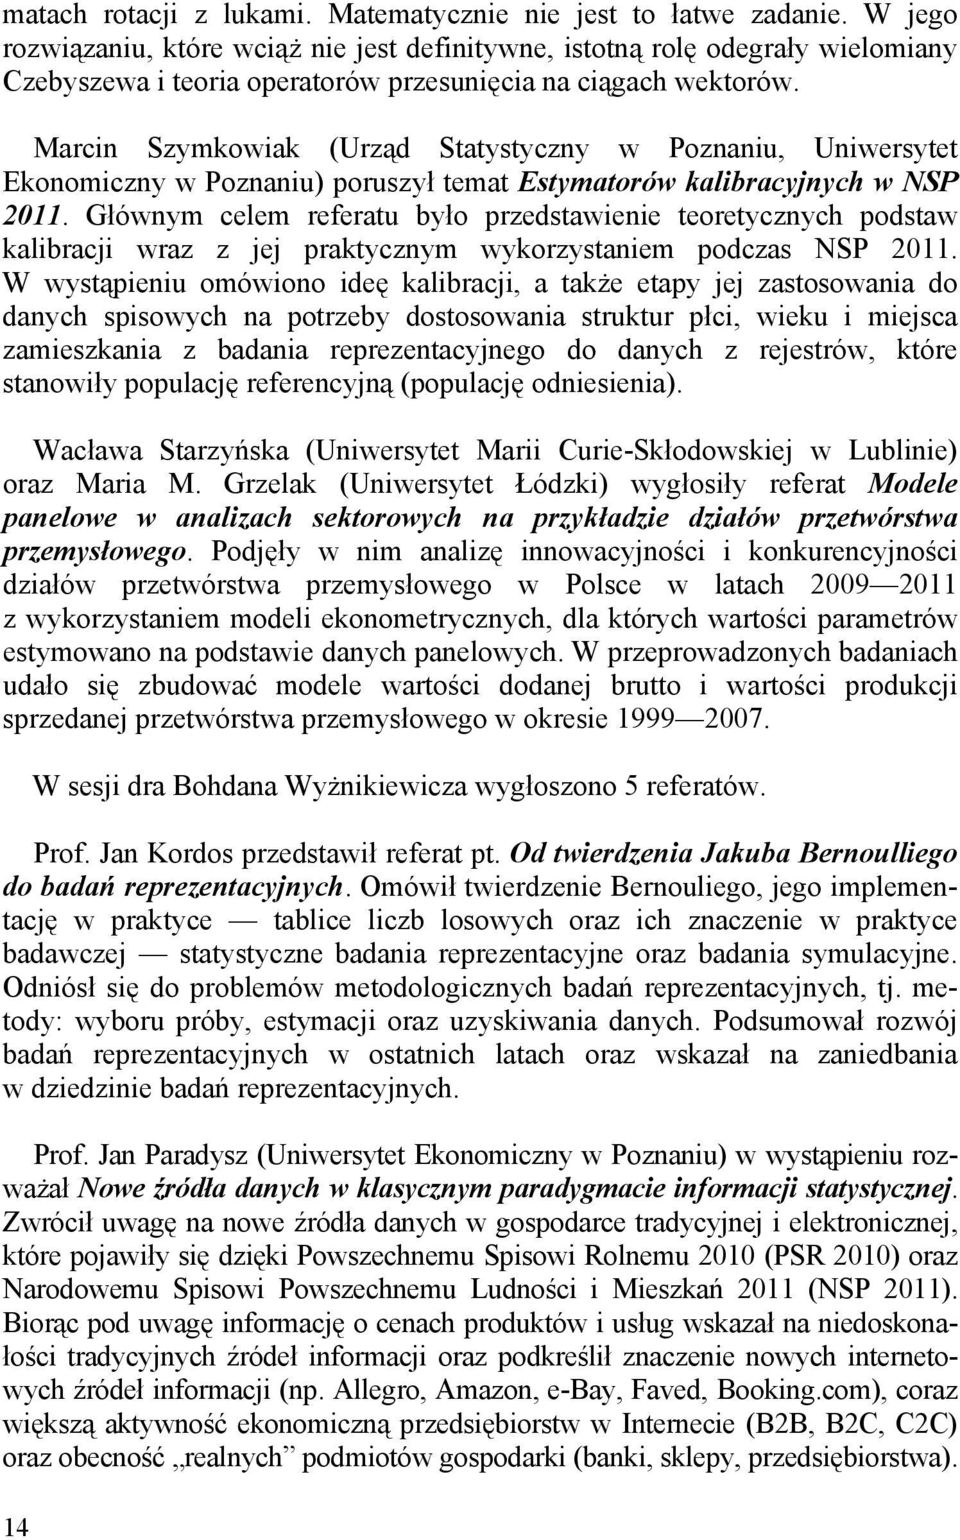 Marcin Szymkowiak (Urząd Statystyczny w Poznaniu, Uniwersytet Ekonomiczny w Poznaniu) poruszył temat Estymatorów kalibracyjnych w NSP 2011.